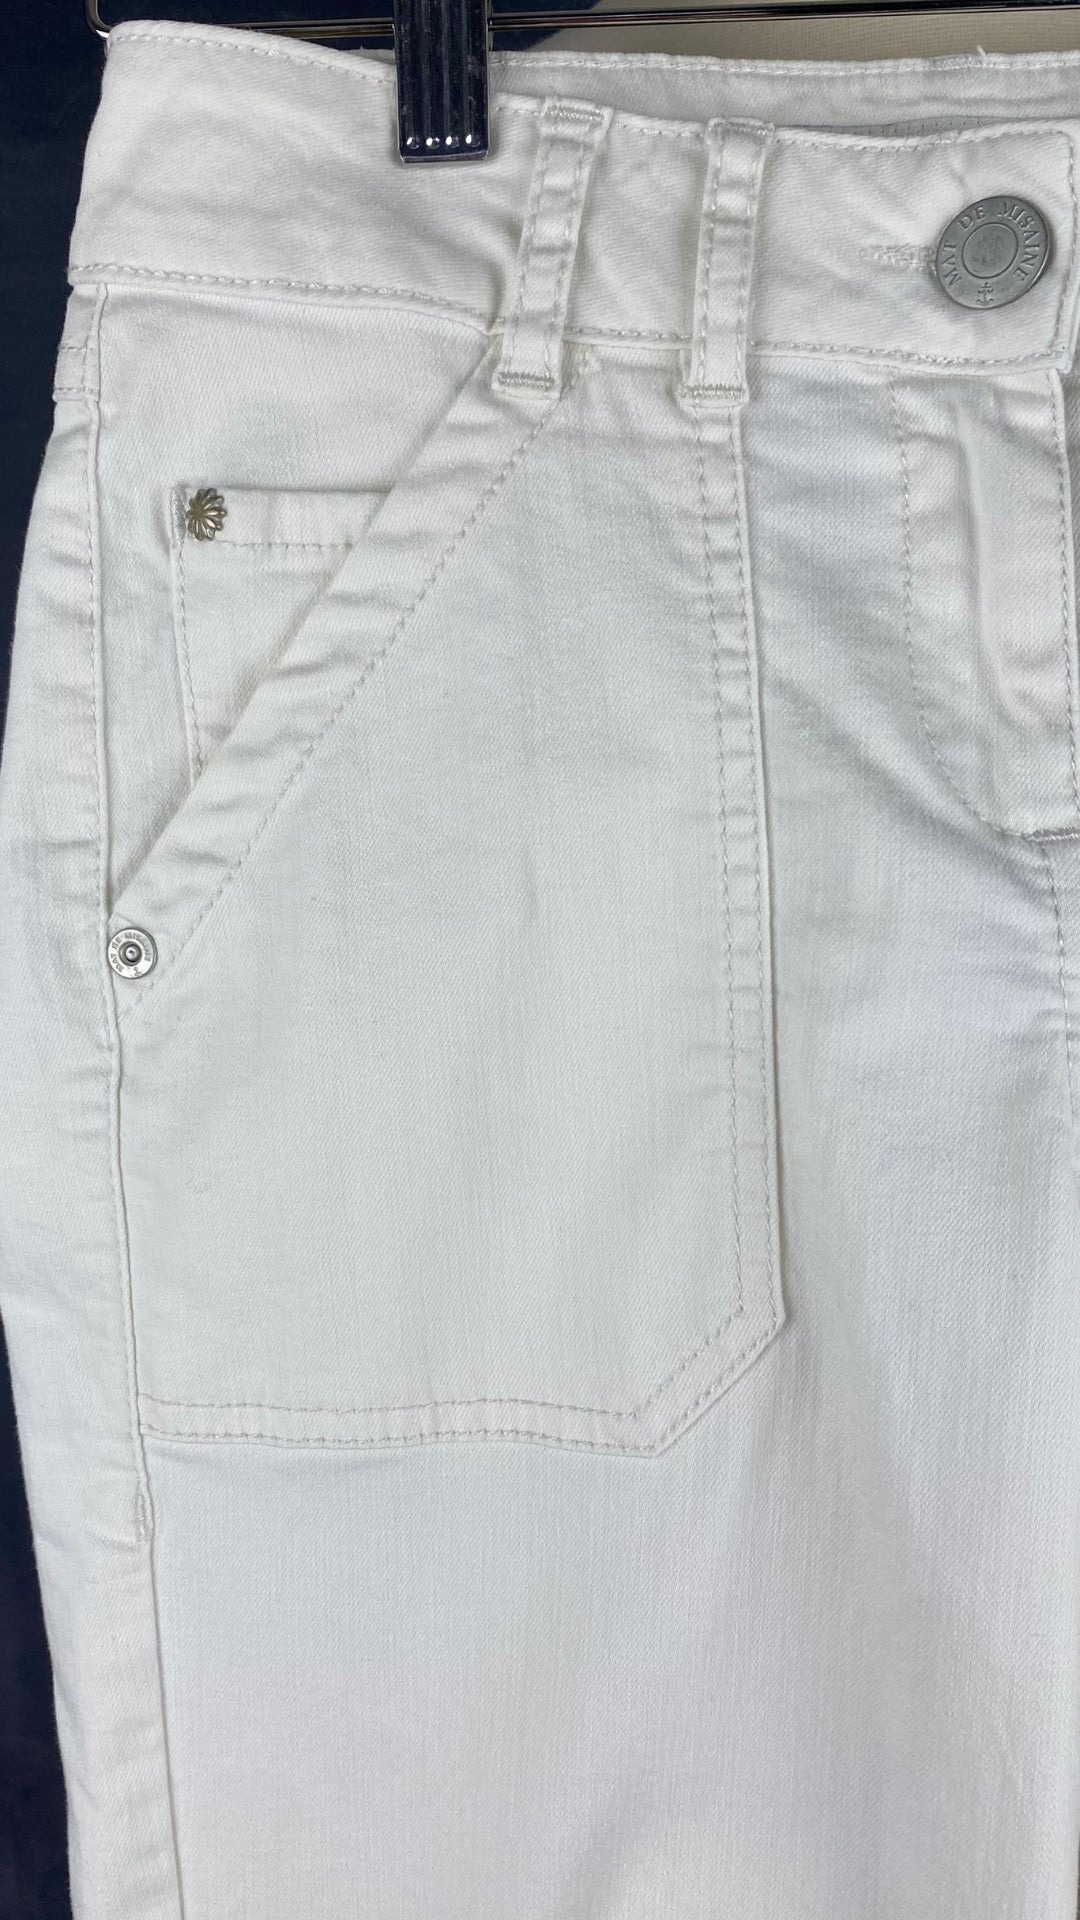 Pantalon crème à jambe droite poches plaquées, Mat de Misaine, taille 34 (xs). Vue de près de la poche.